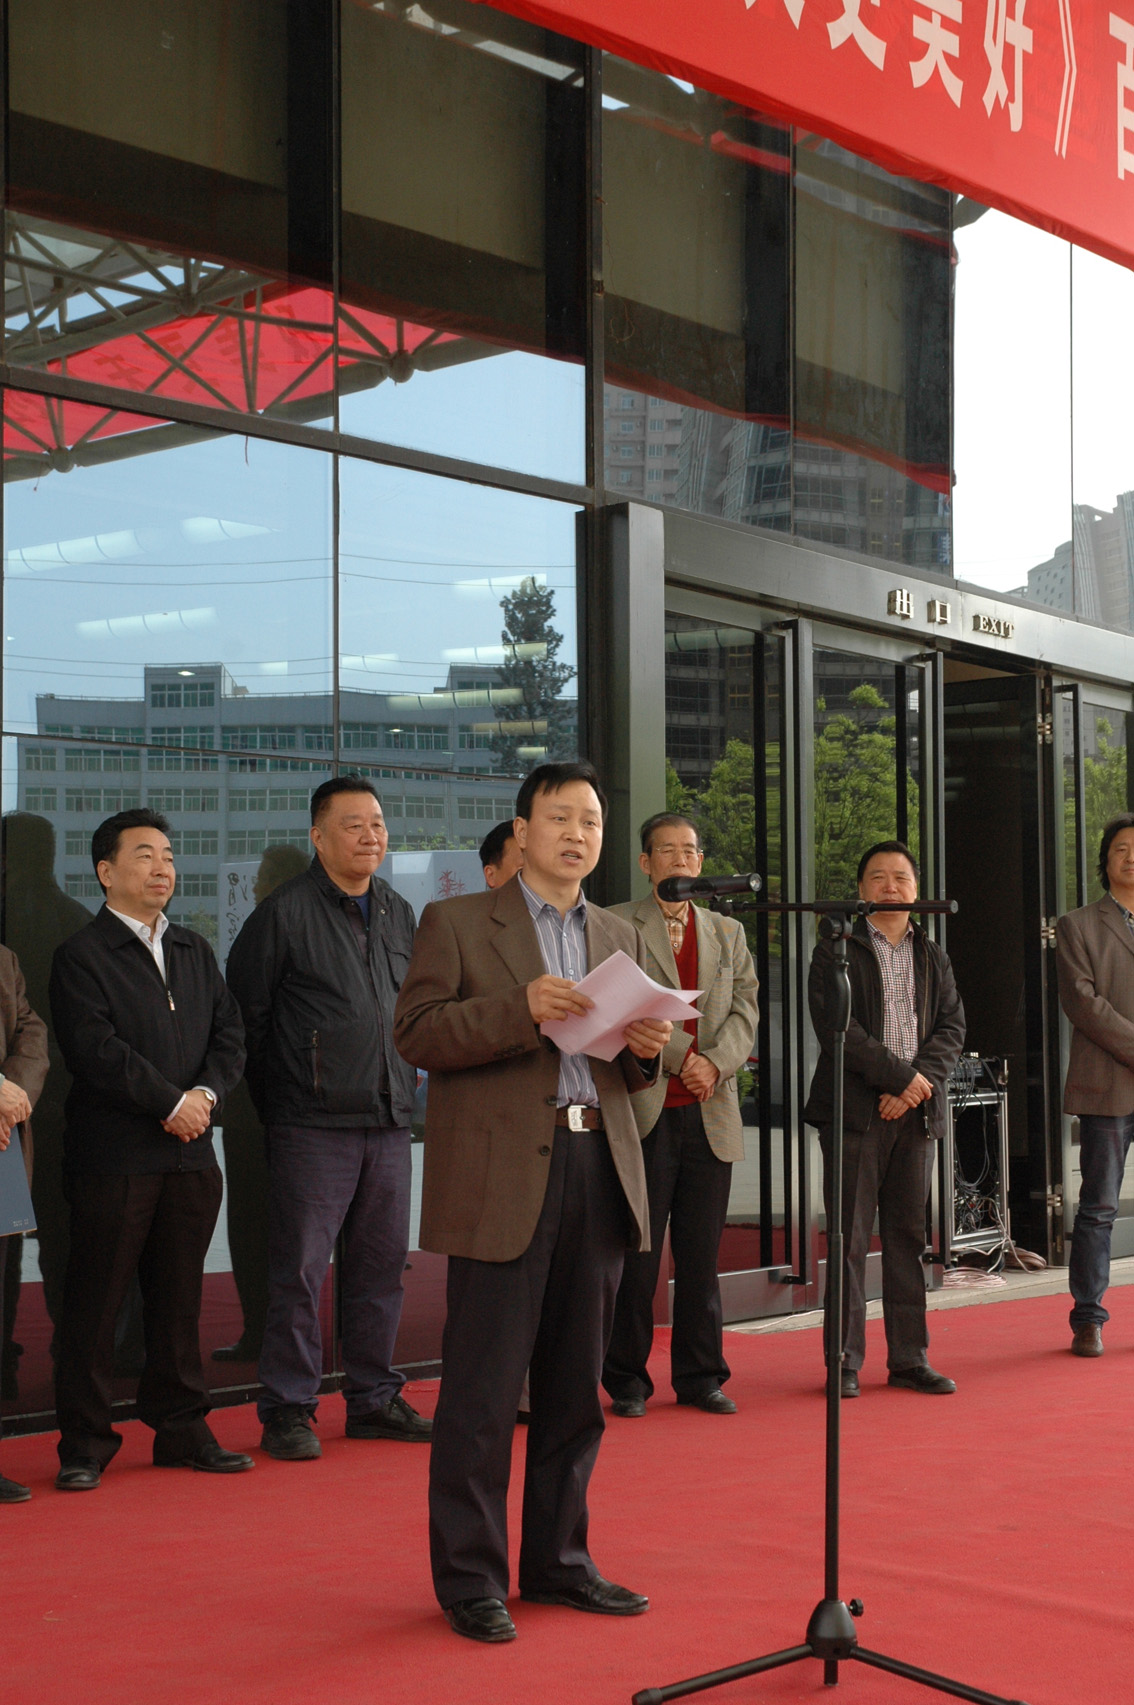 陝西省美術博物館開幕式上畫家郭永潔在致辭